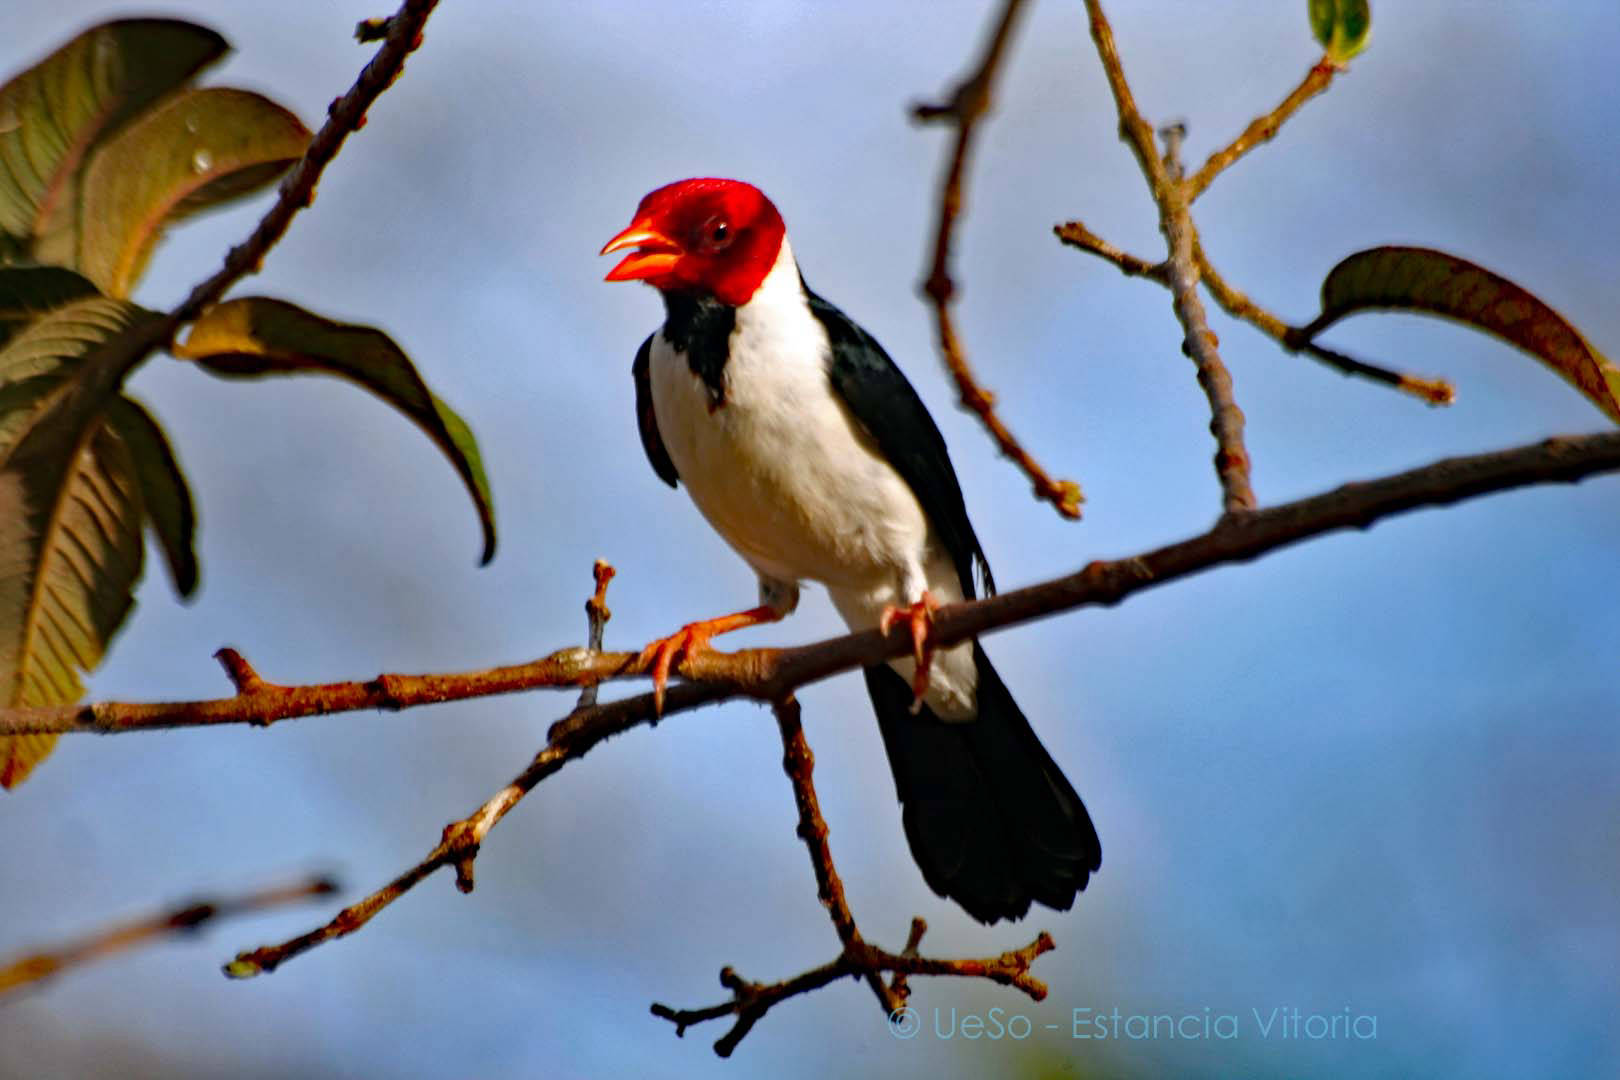 640 bird species in the Pantanal